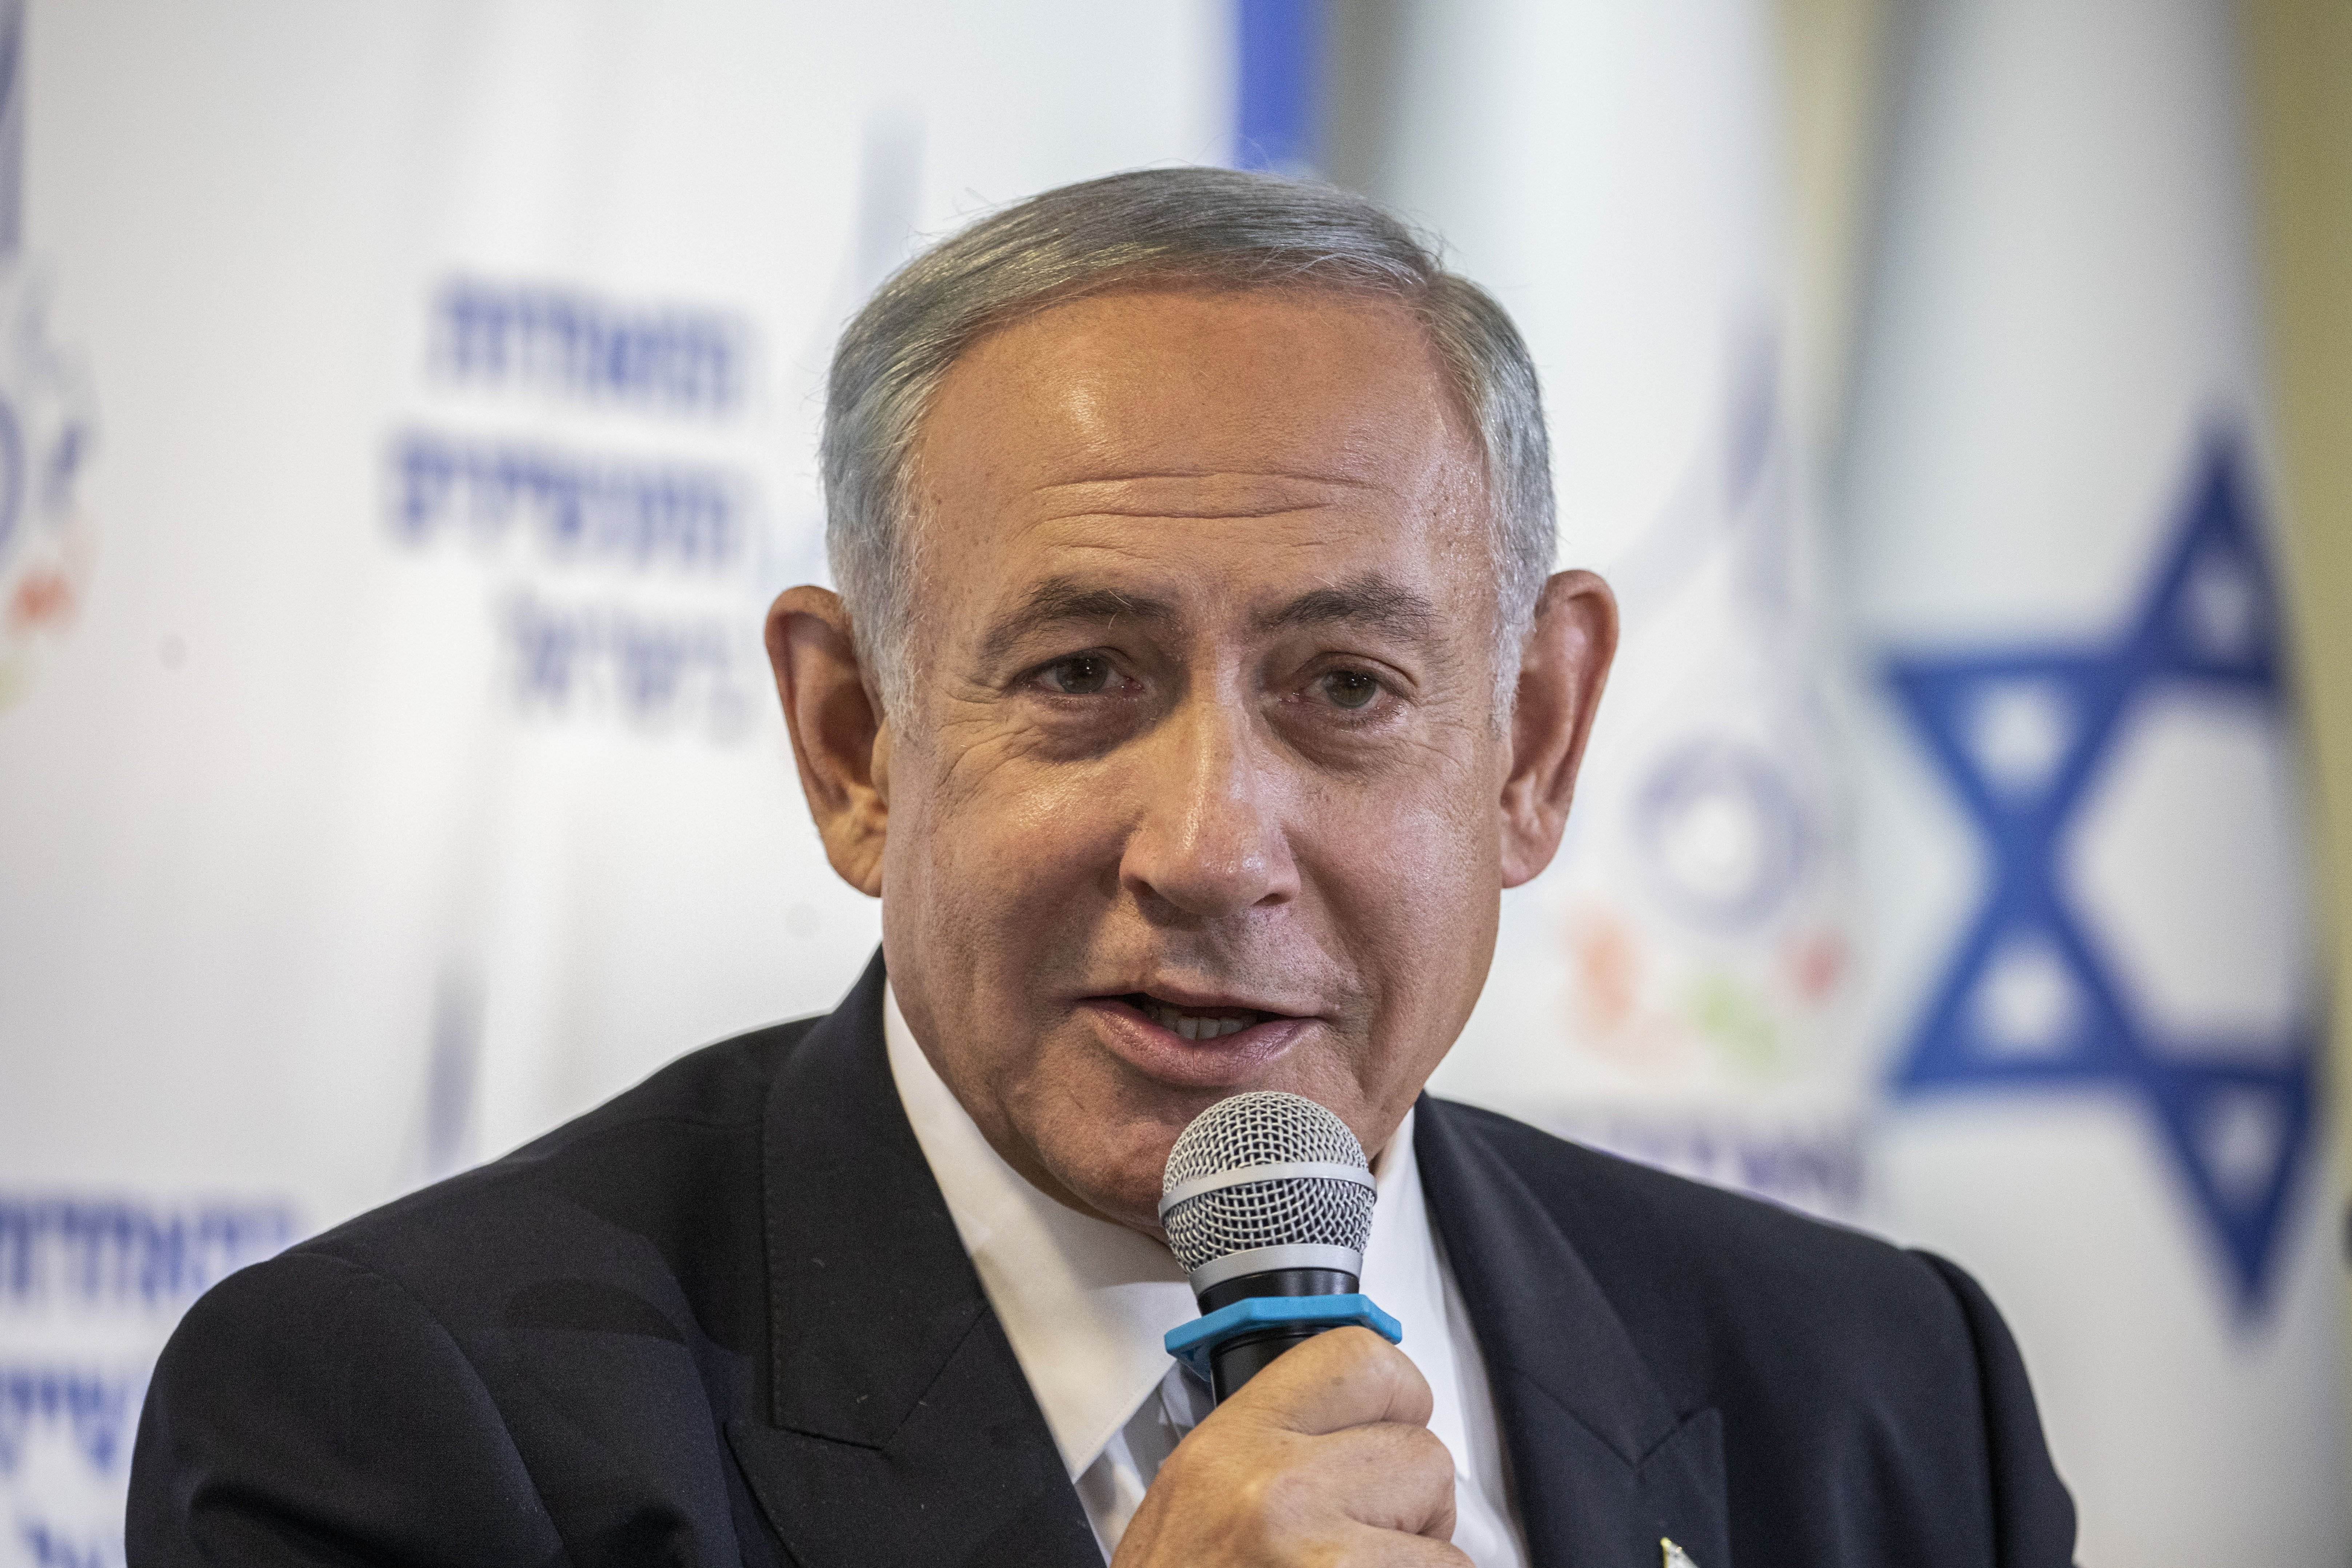 El 56% de los israelíes considera que Netanyahu debe dimitir en cuanto termine el conflicto